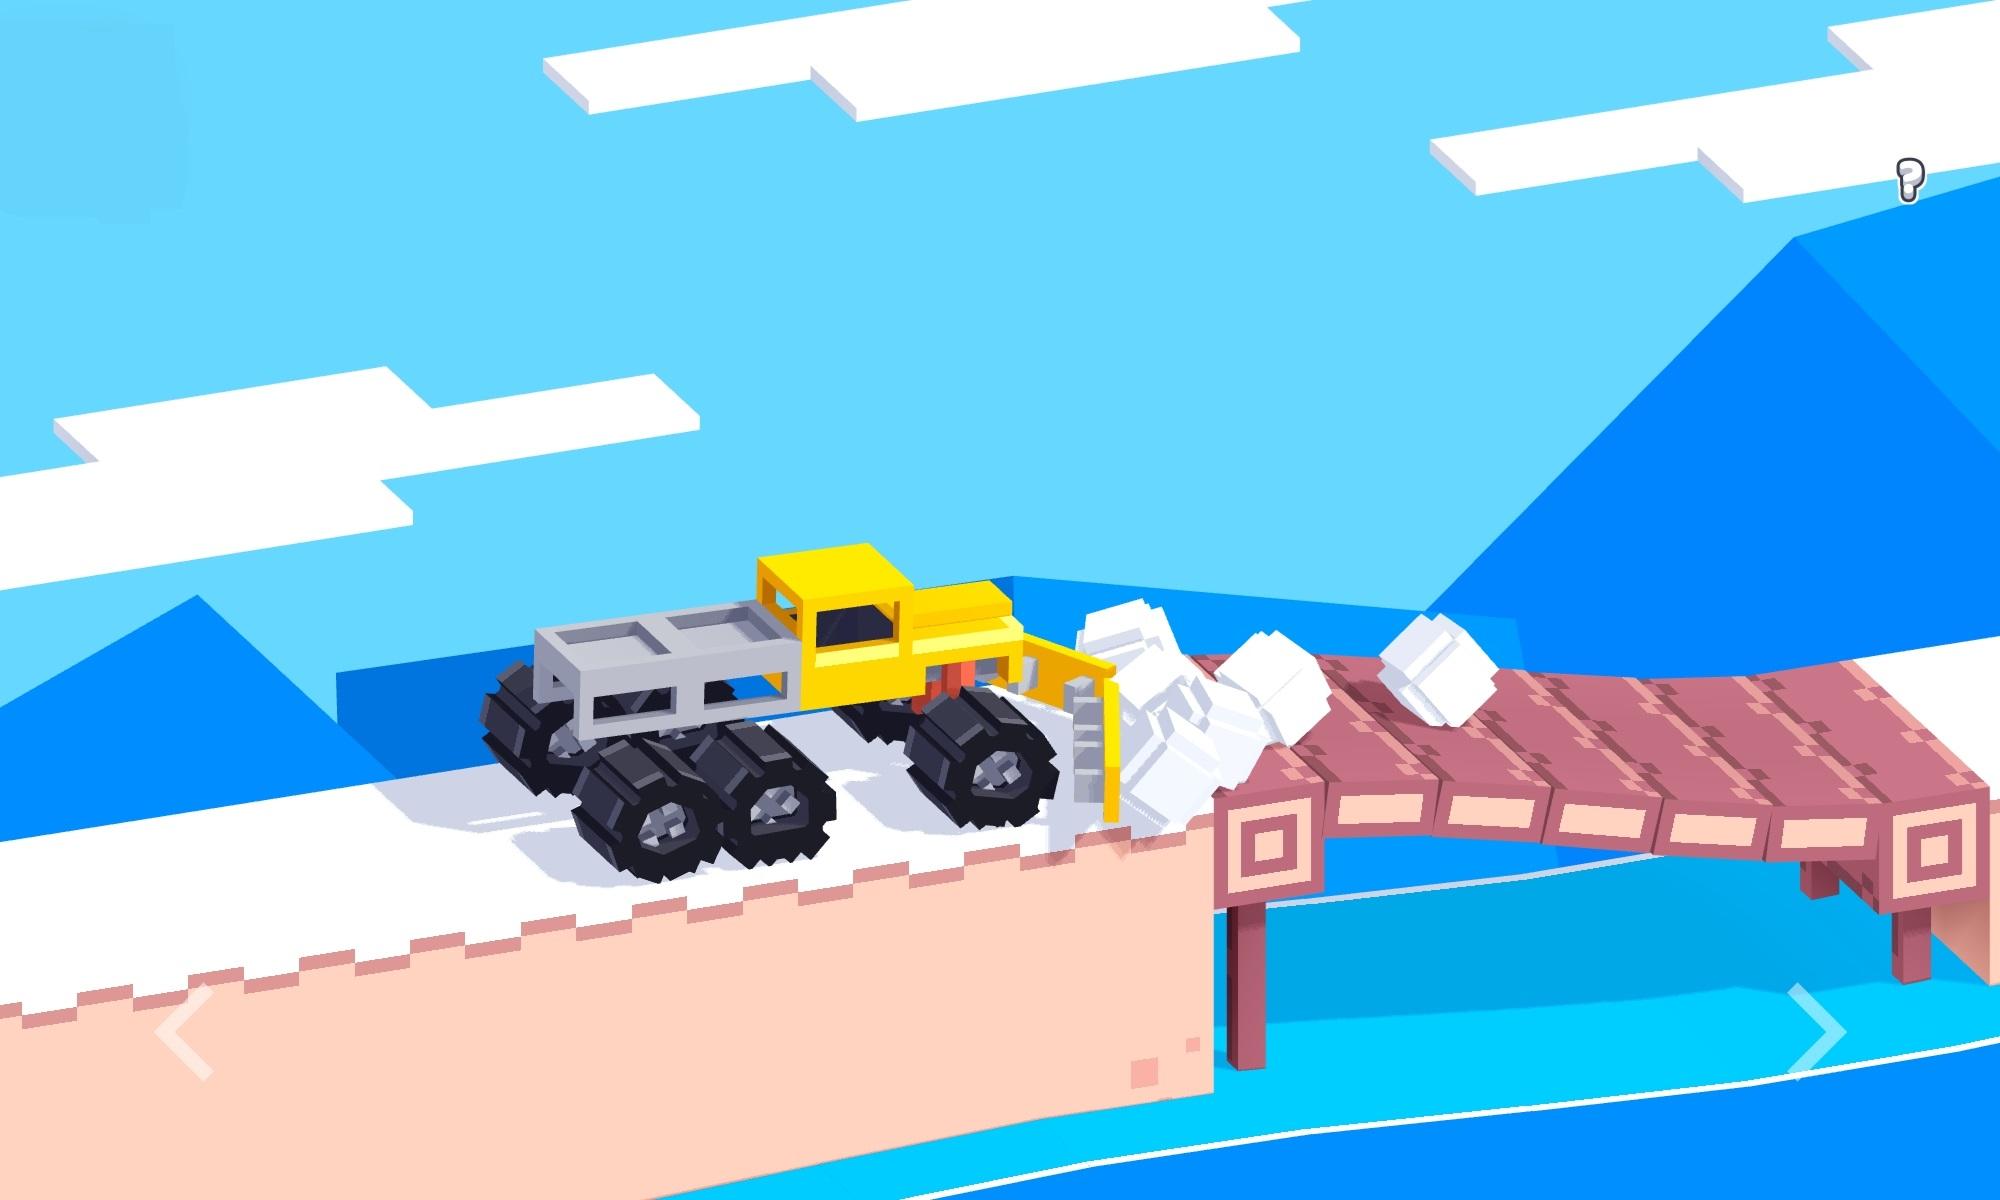 Screenshot 1 of 몬스터 트럭 게임 4.0